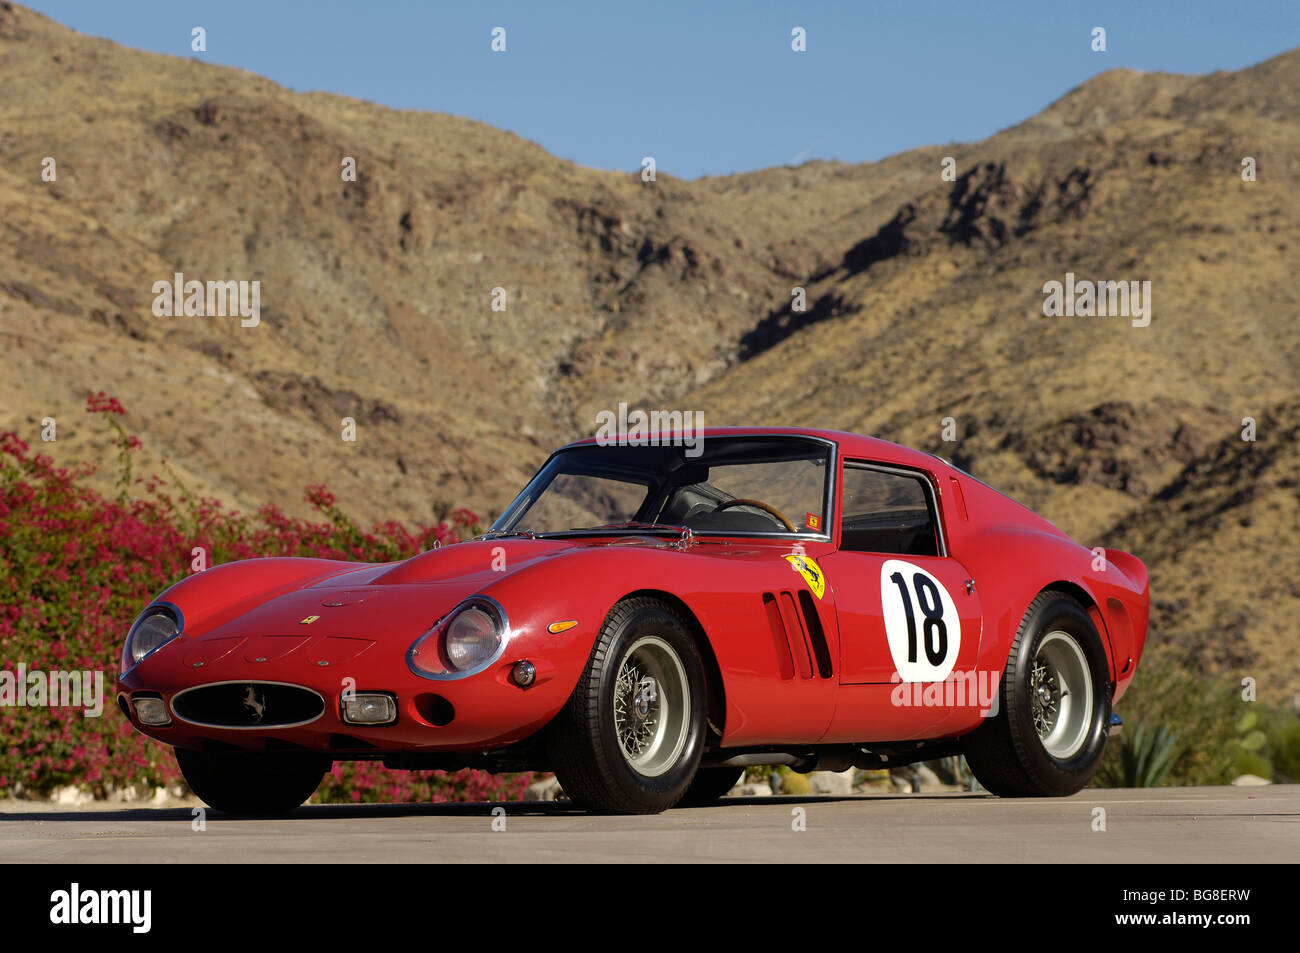 1962 Ferrari 250 GTO fond désert vue 3/4 avant en rouge Banque D'Images